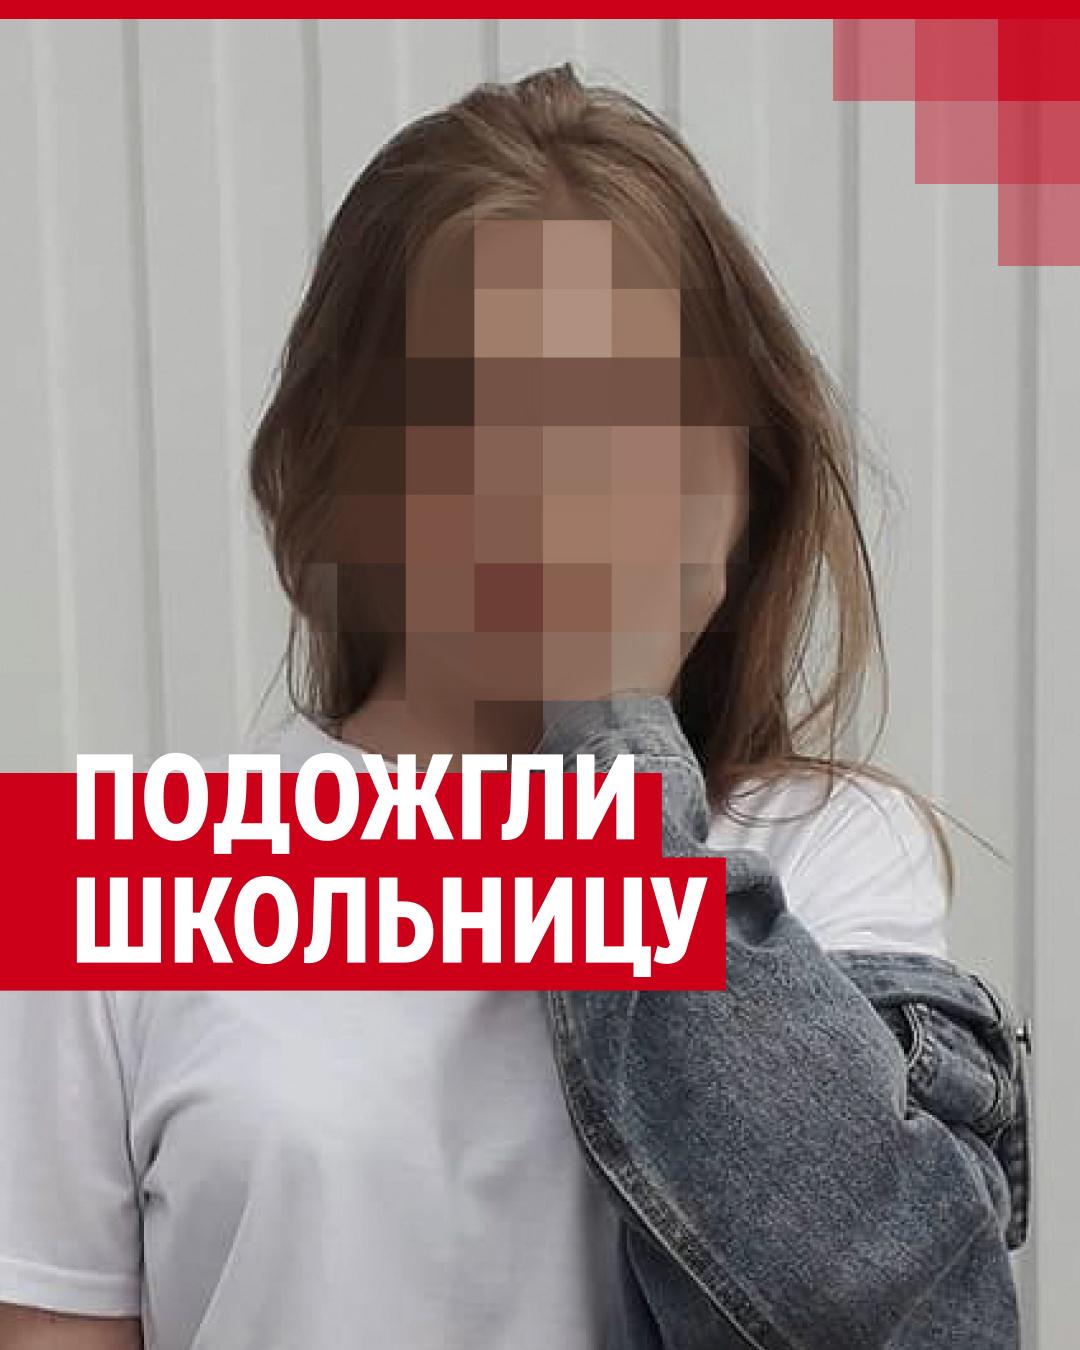 В Пермском крае подожгли и бросили на путях 16-летнюю девочку.  Подозреваемый задержан - 14 июля 2023 - НГС